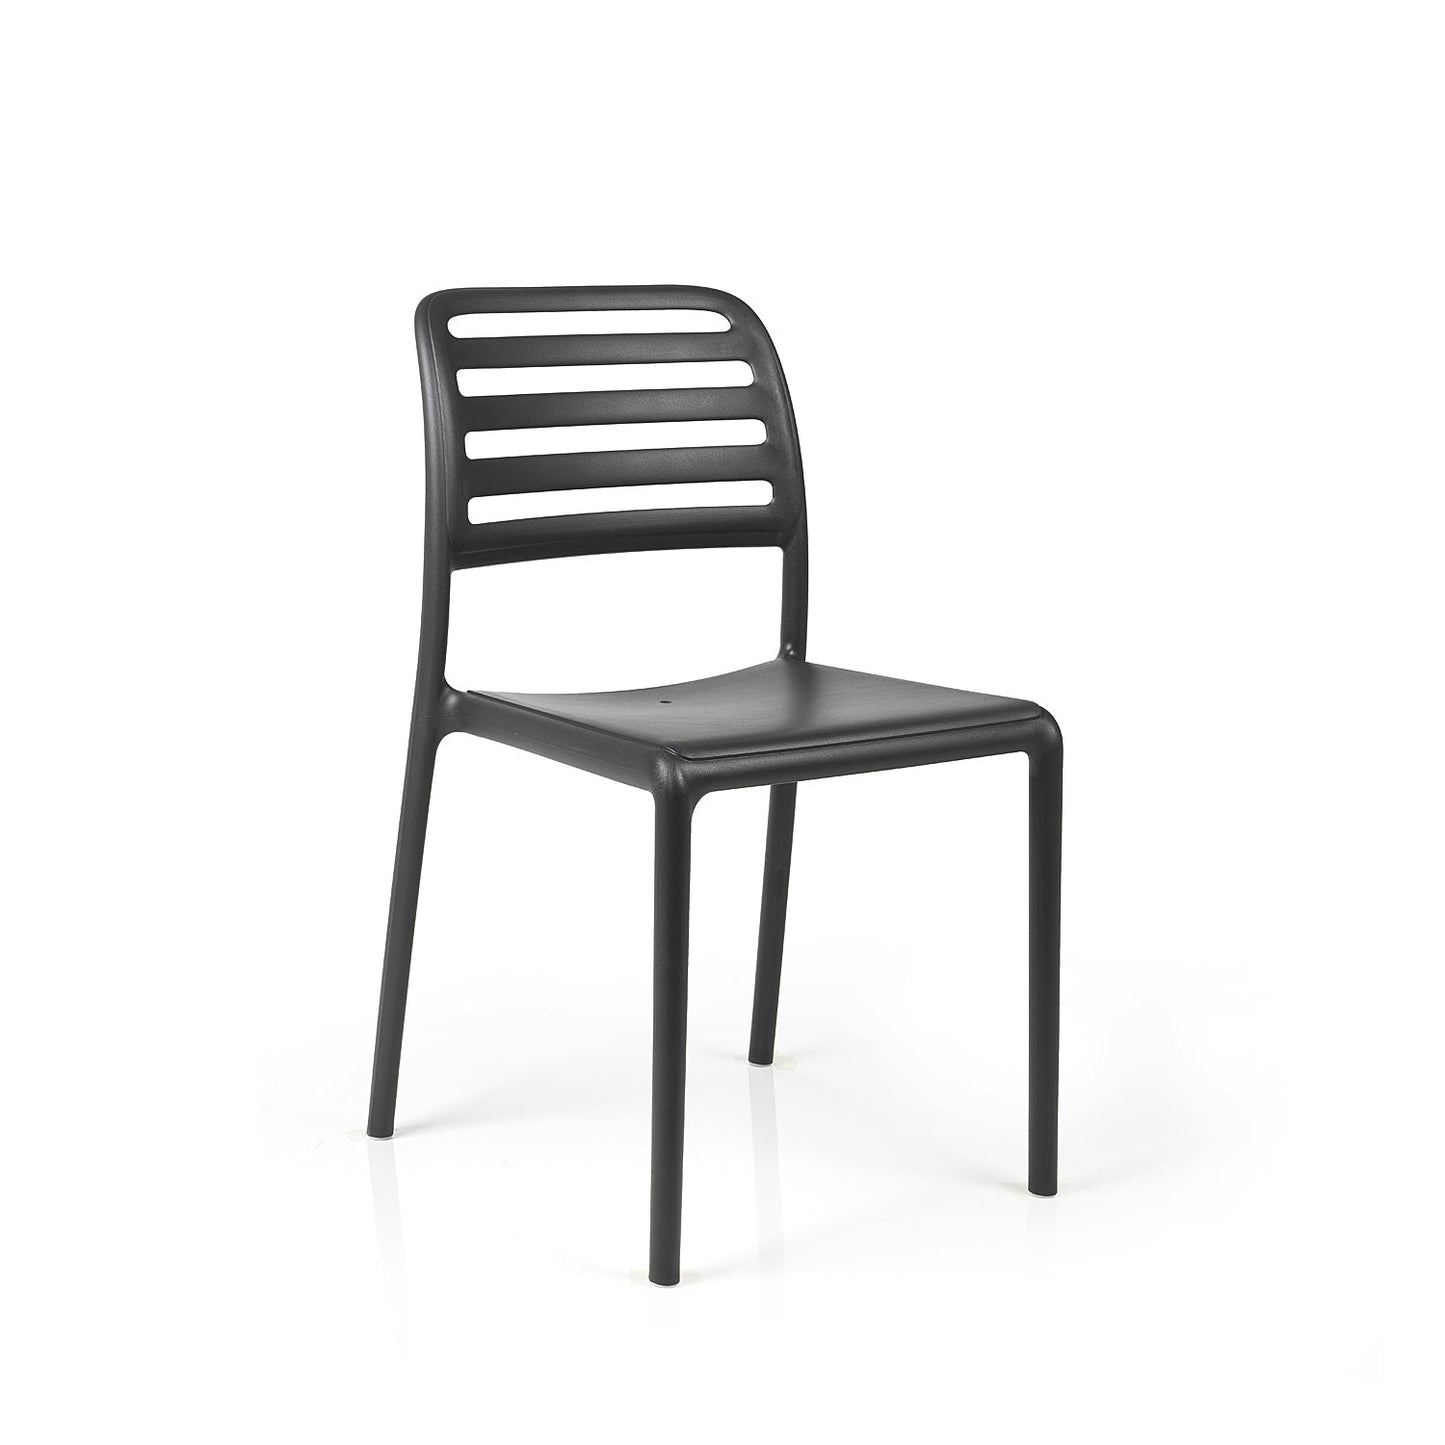 Costa Bistro Garden Chair By Nardi - Anthracite